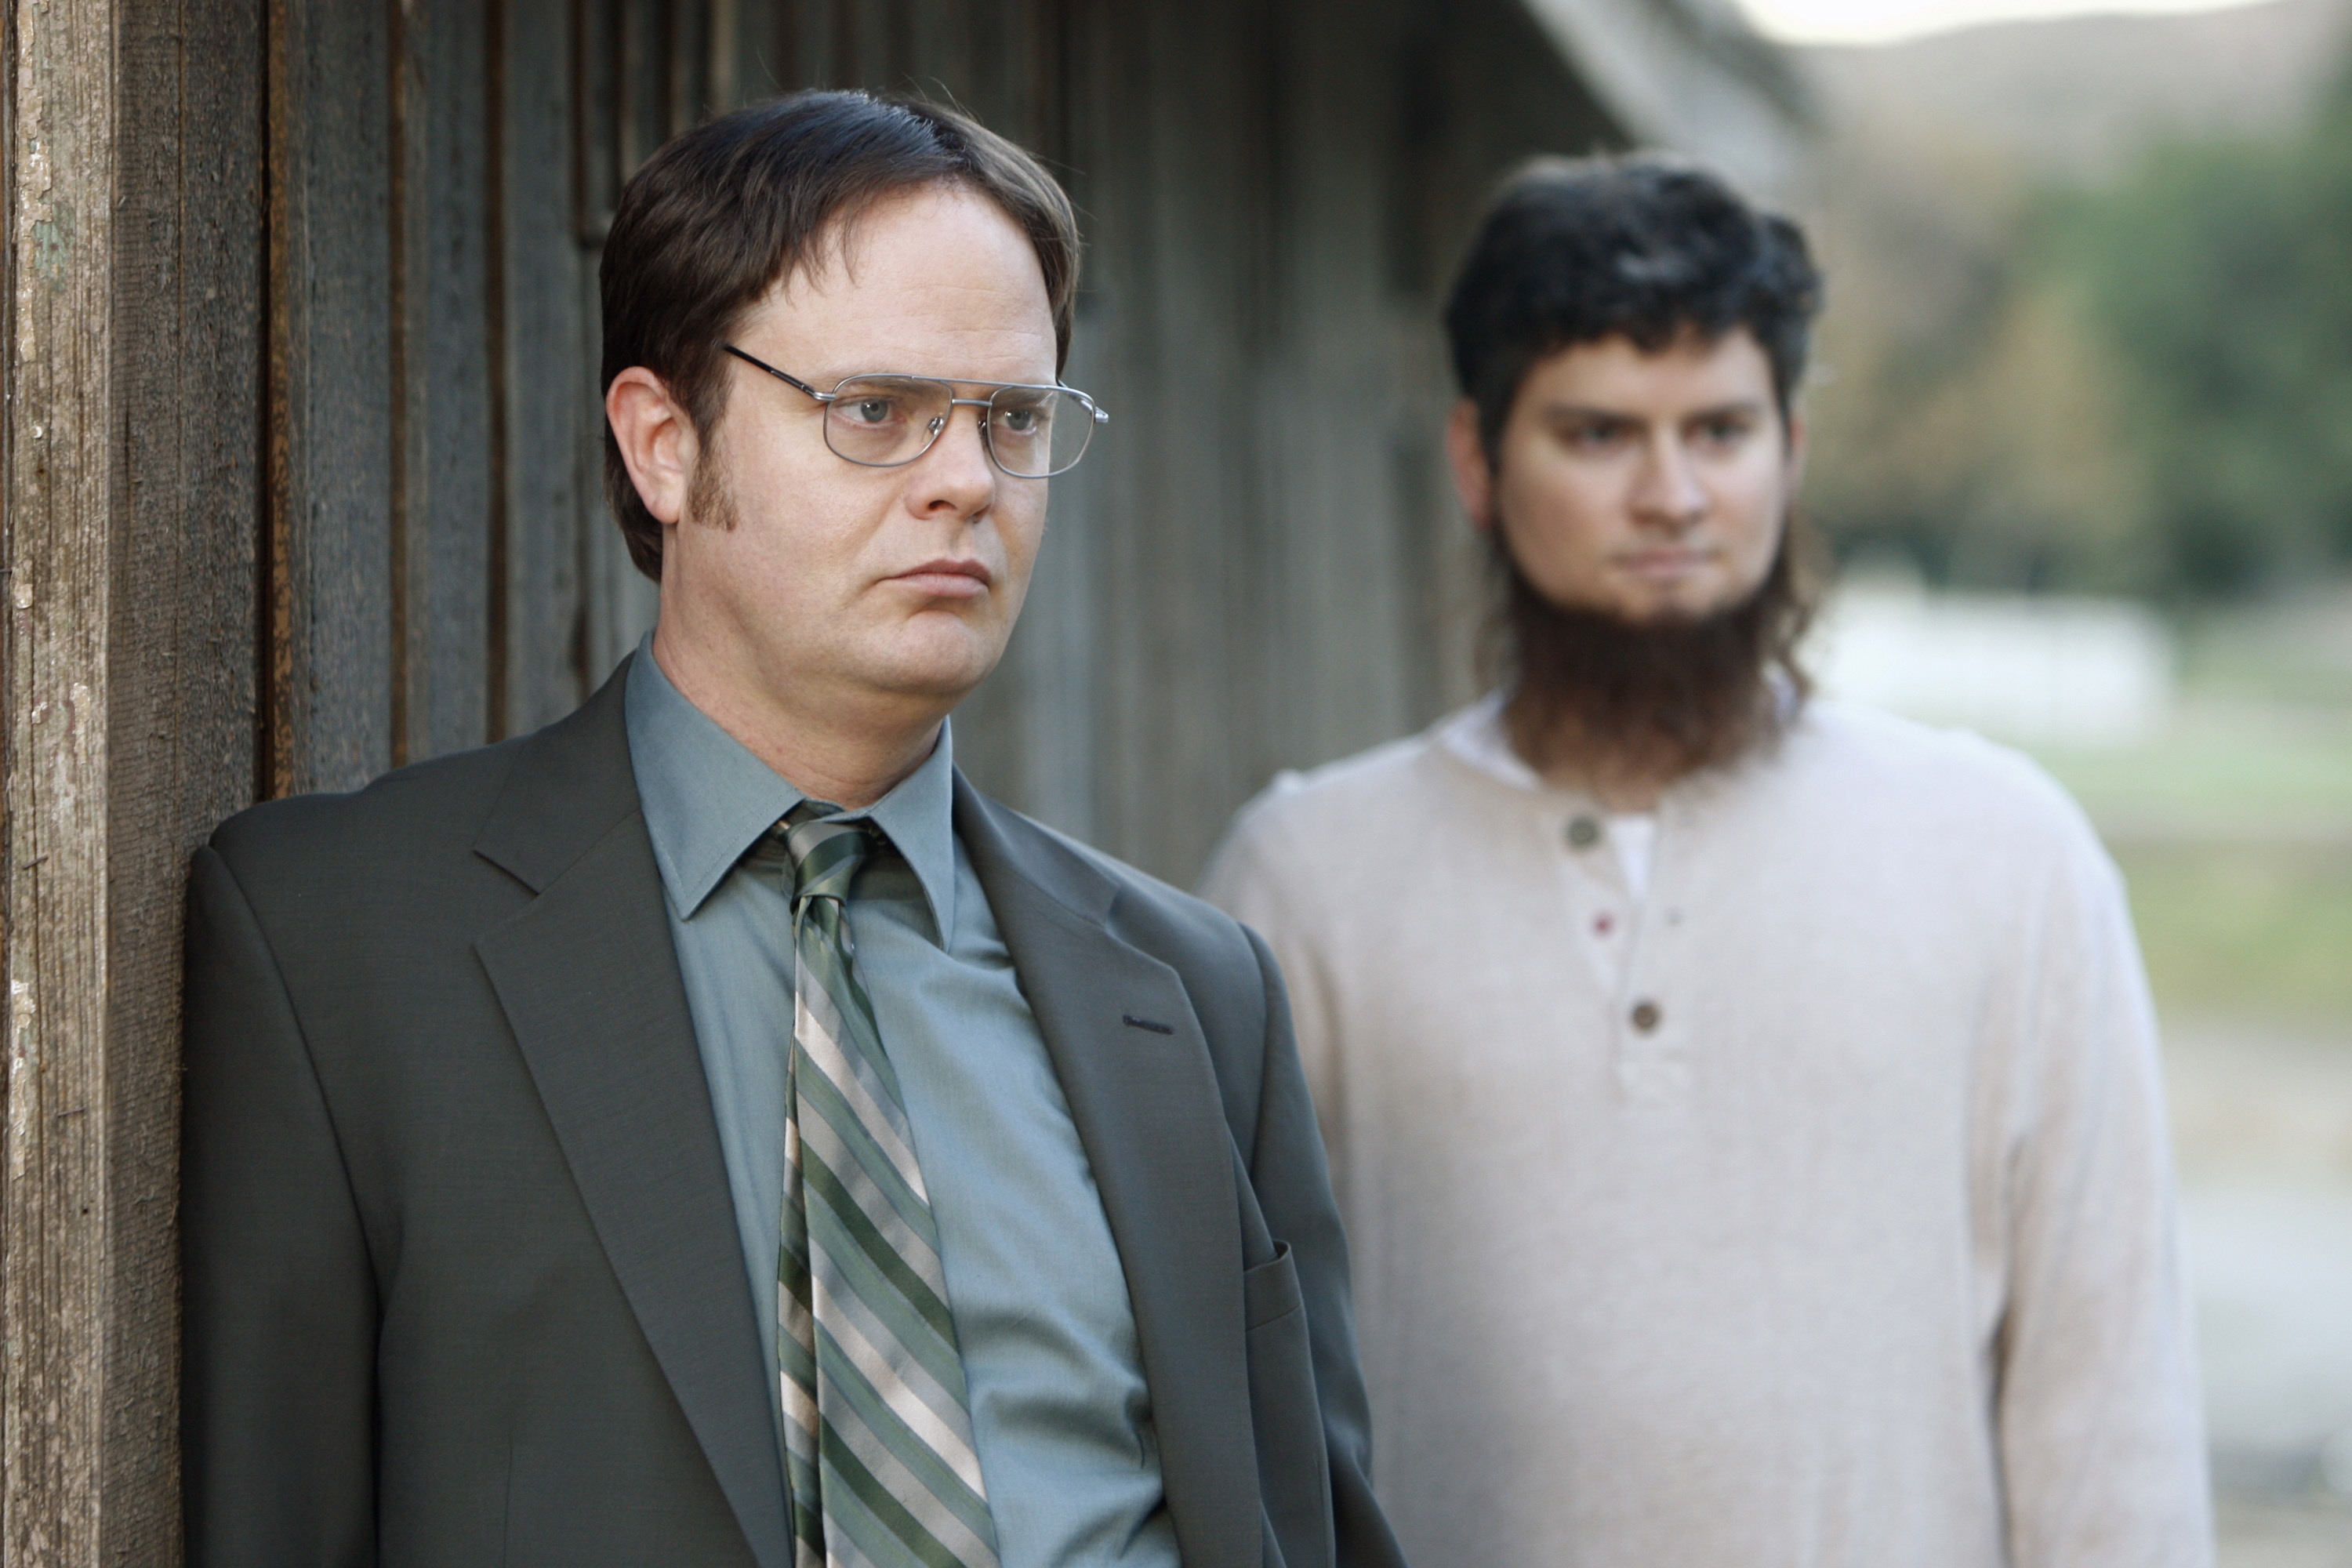 'The Office' Rainn Wilson as Dwight Schrute, Michael Schur as Mose